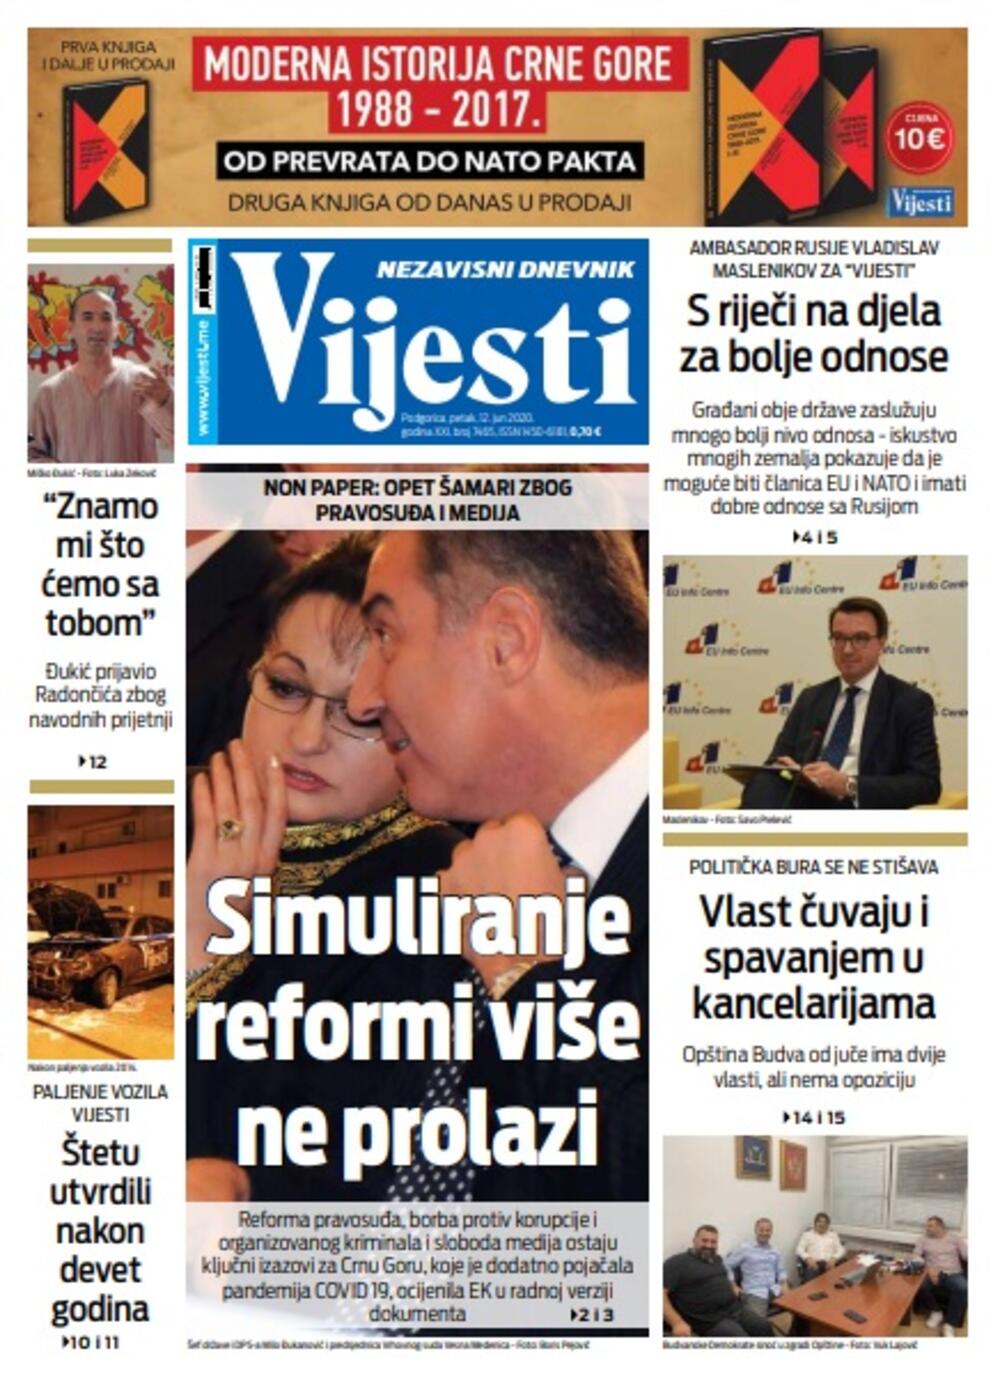 Naslovna strana "Vijesti" za petak 12. jun 2020. godine, Foto: Vijesti